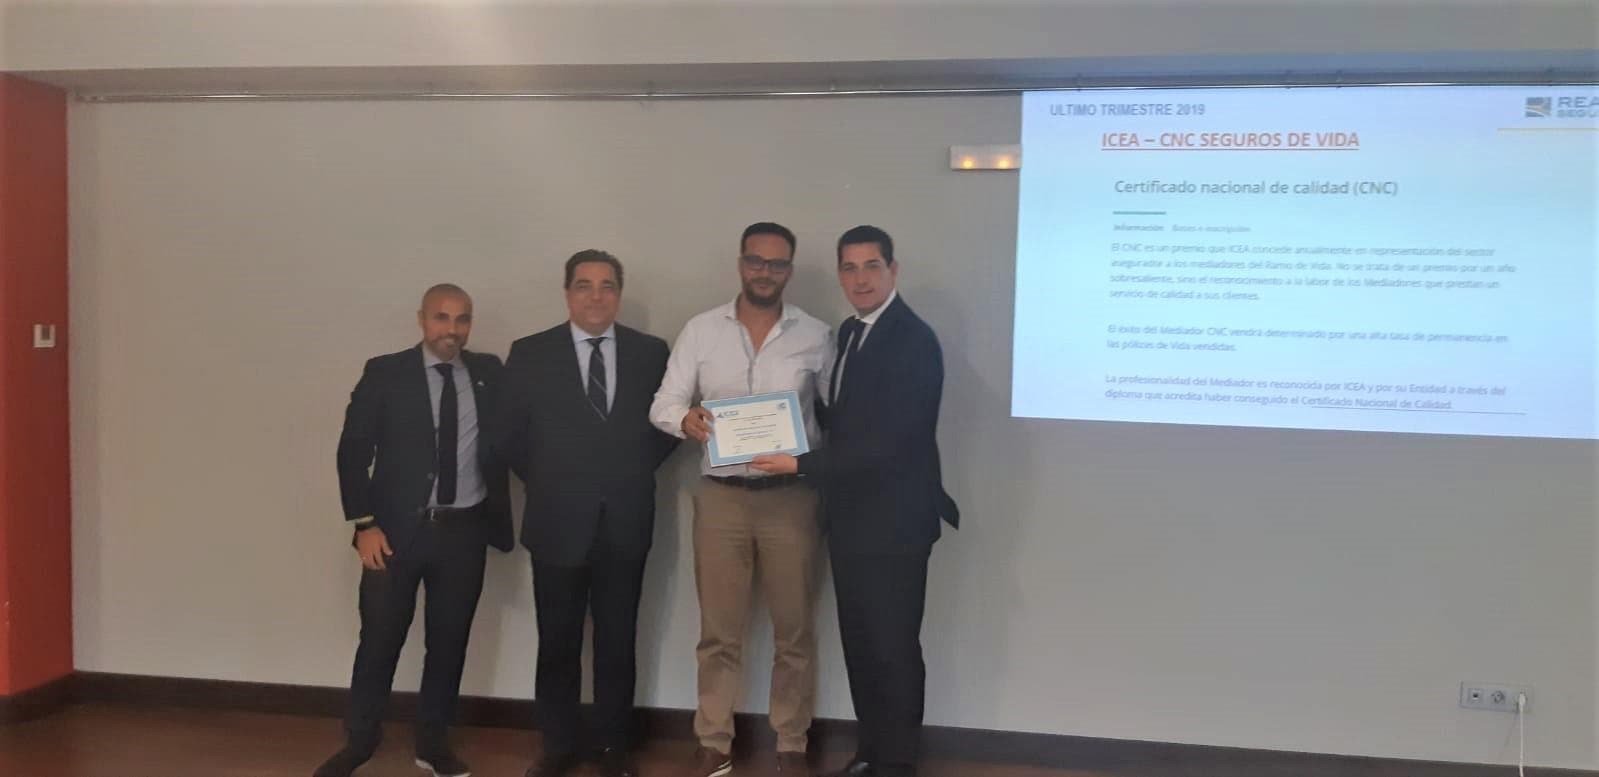 Nuestras agencias en Salvaterra y Ponteareas hemos recibido el Certificado Nacional de Calidad - Imagen 1